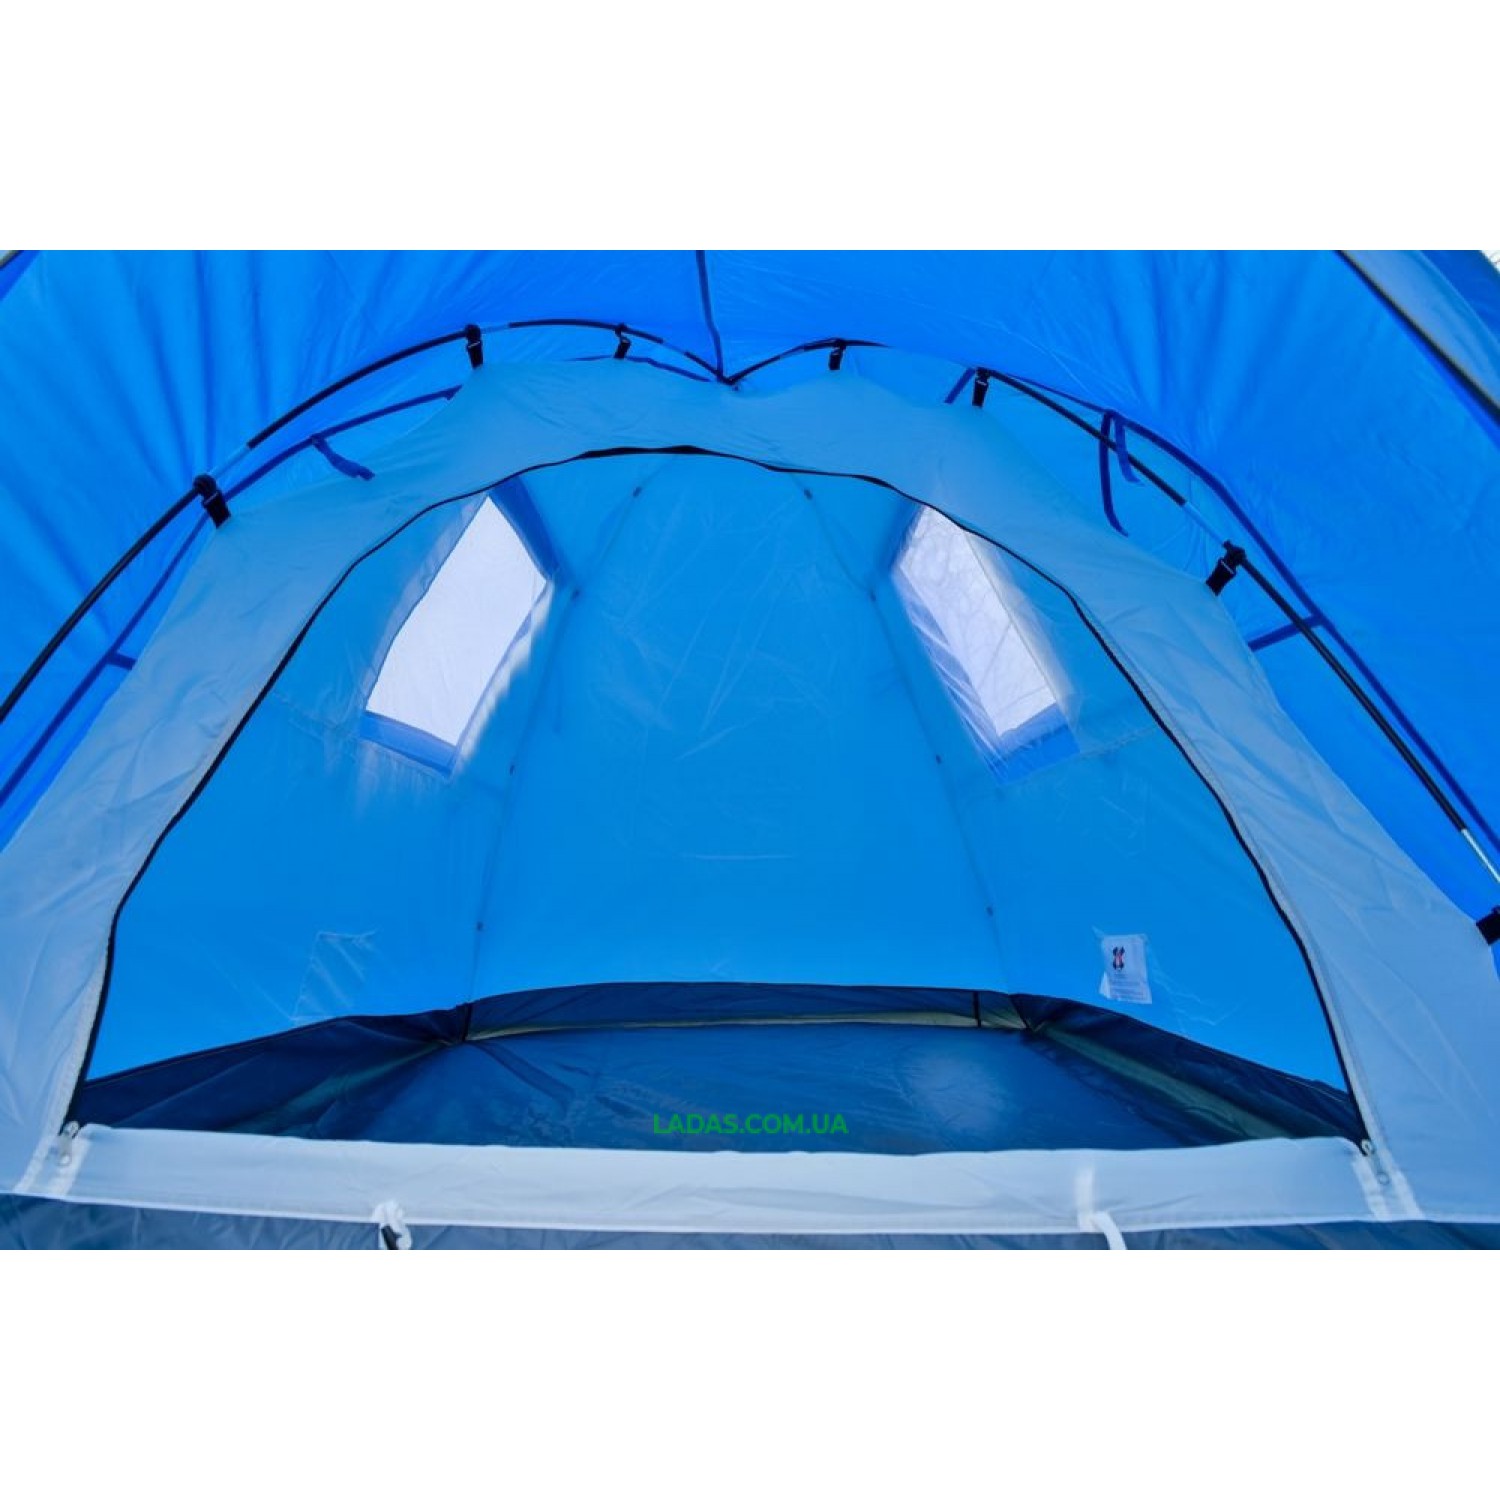 Палатка двухместная Coleman 3006 (Польша)